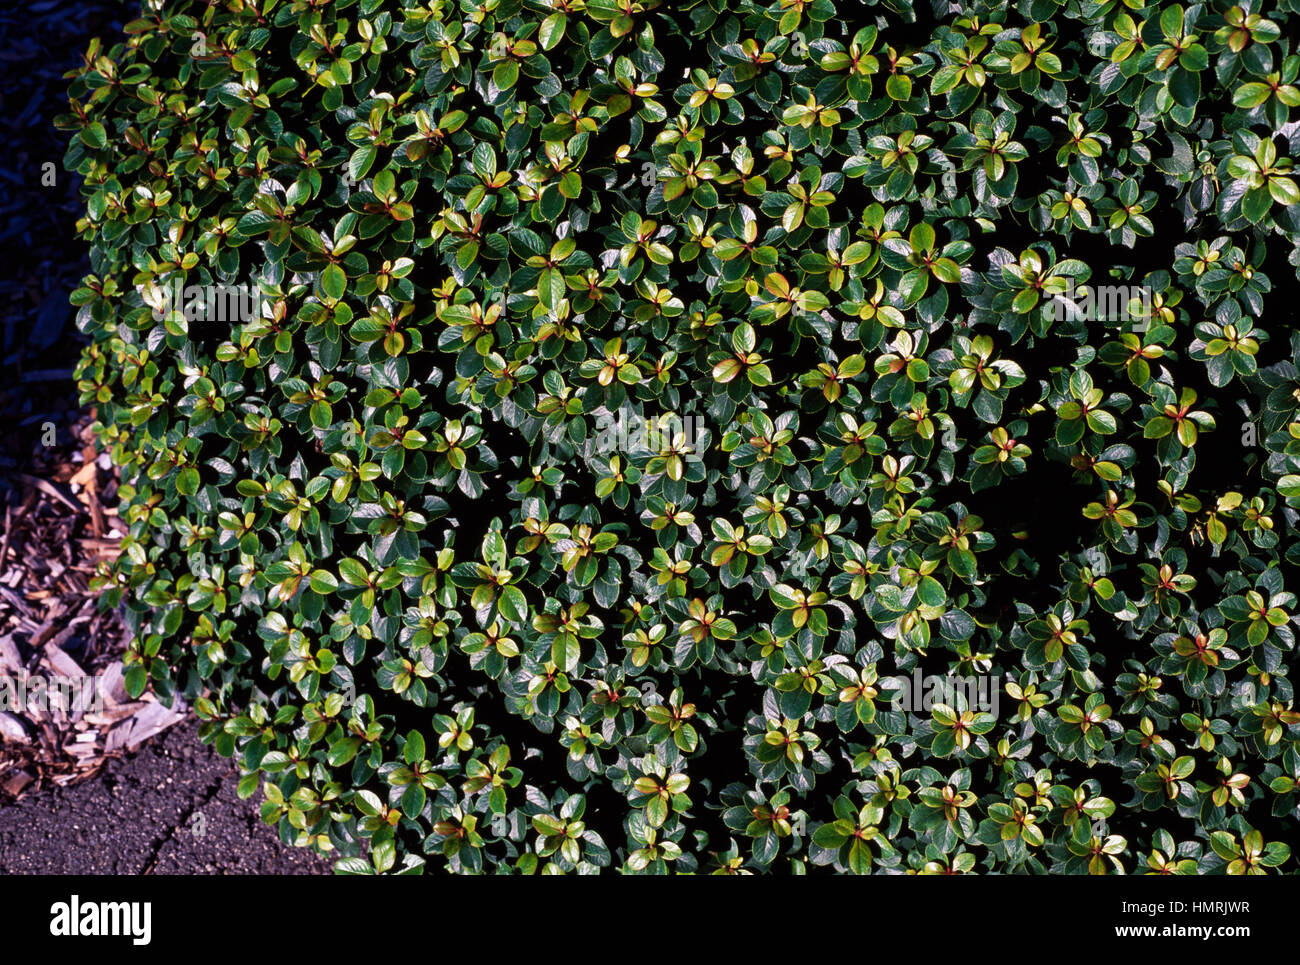 Redclaws (Escallonia Lou Allen), Escalloniaceae. Stock Photo